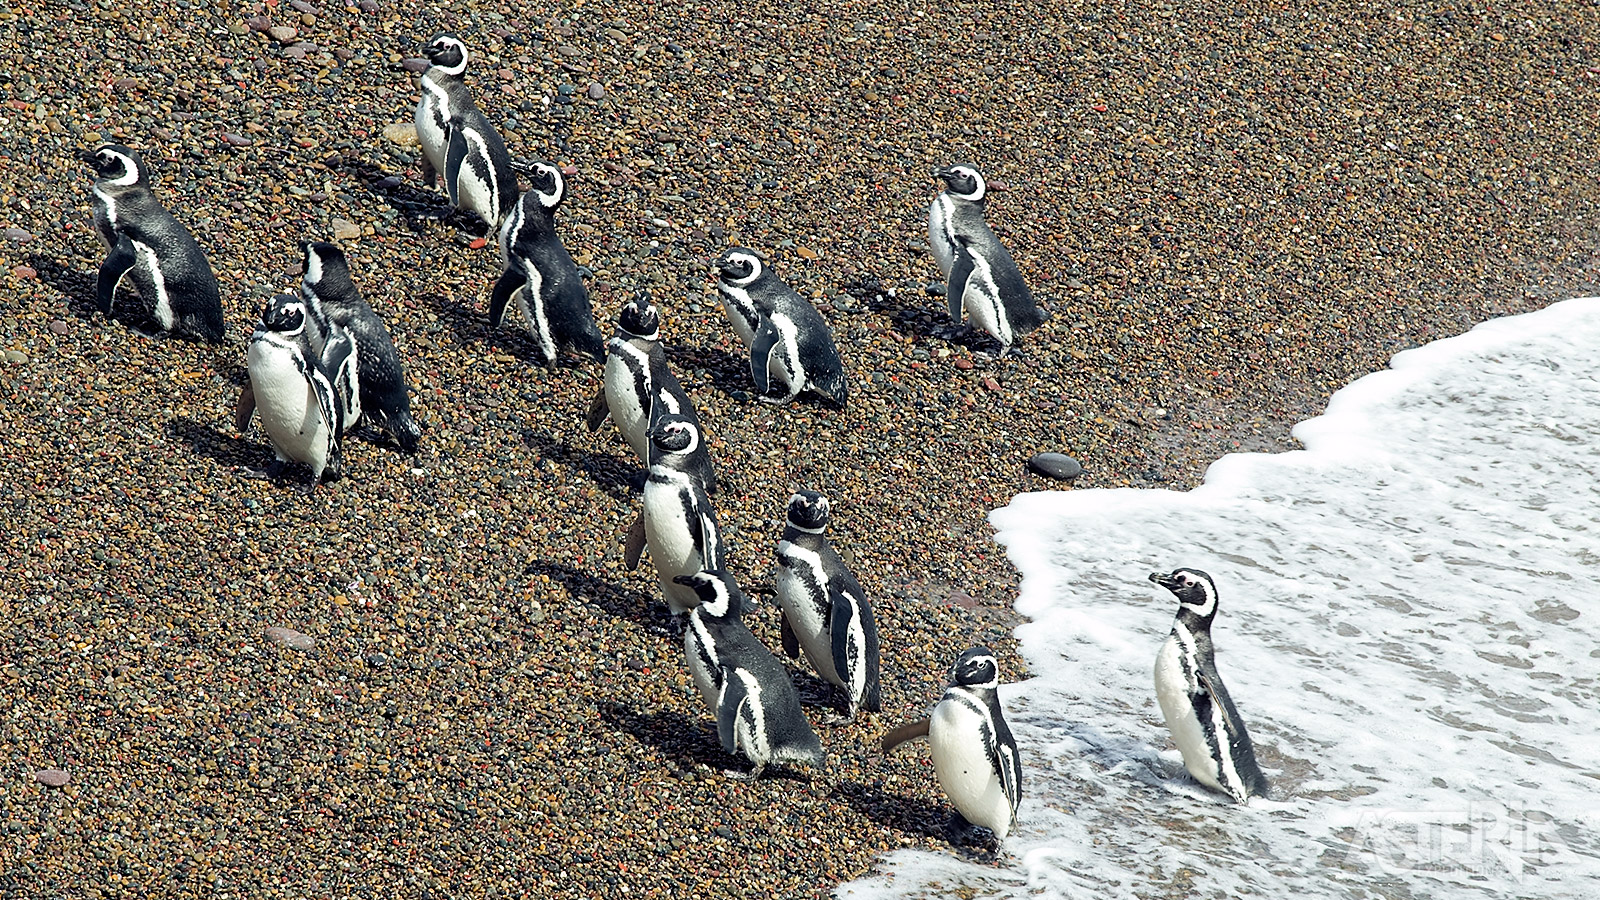 In de Peninsula Valdés leeft ook een kolonie van meer dan 200.000 Magelhaenpinguïns